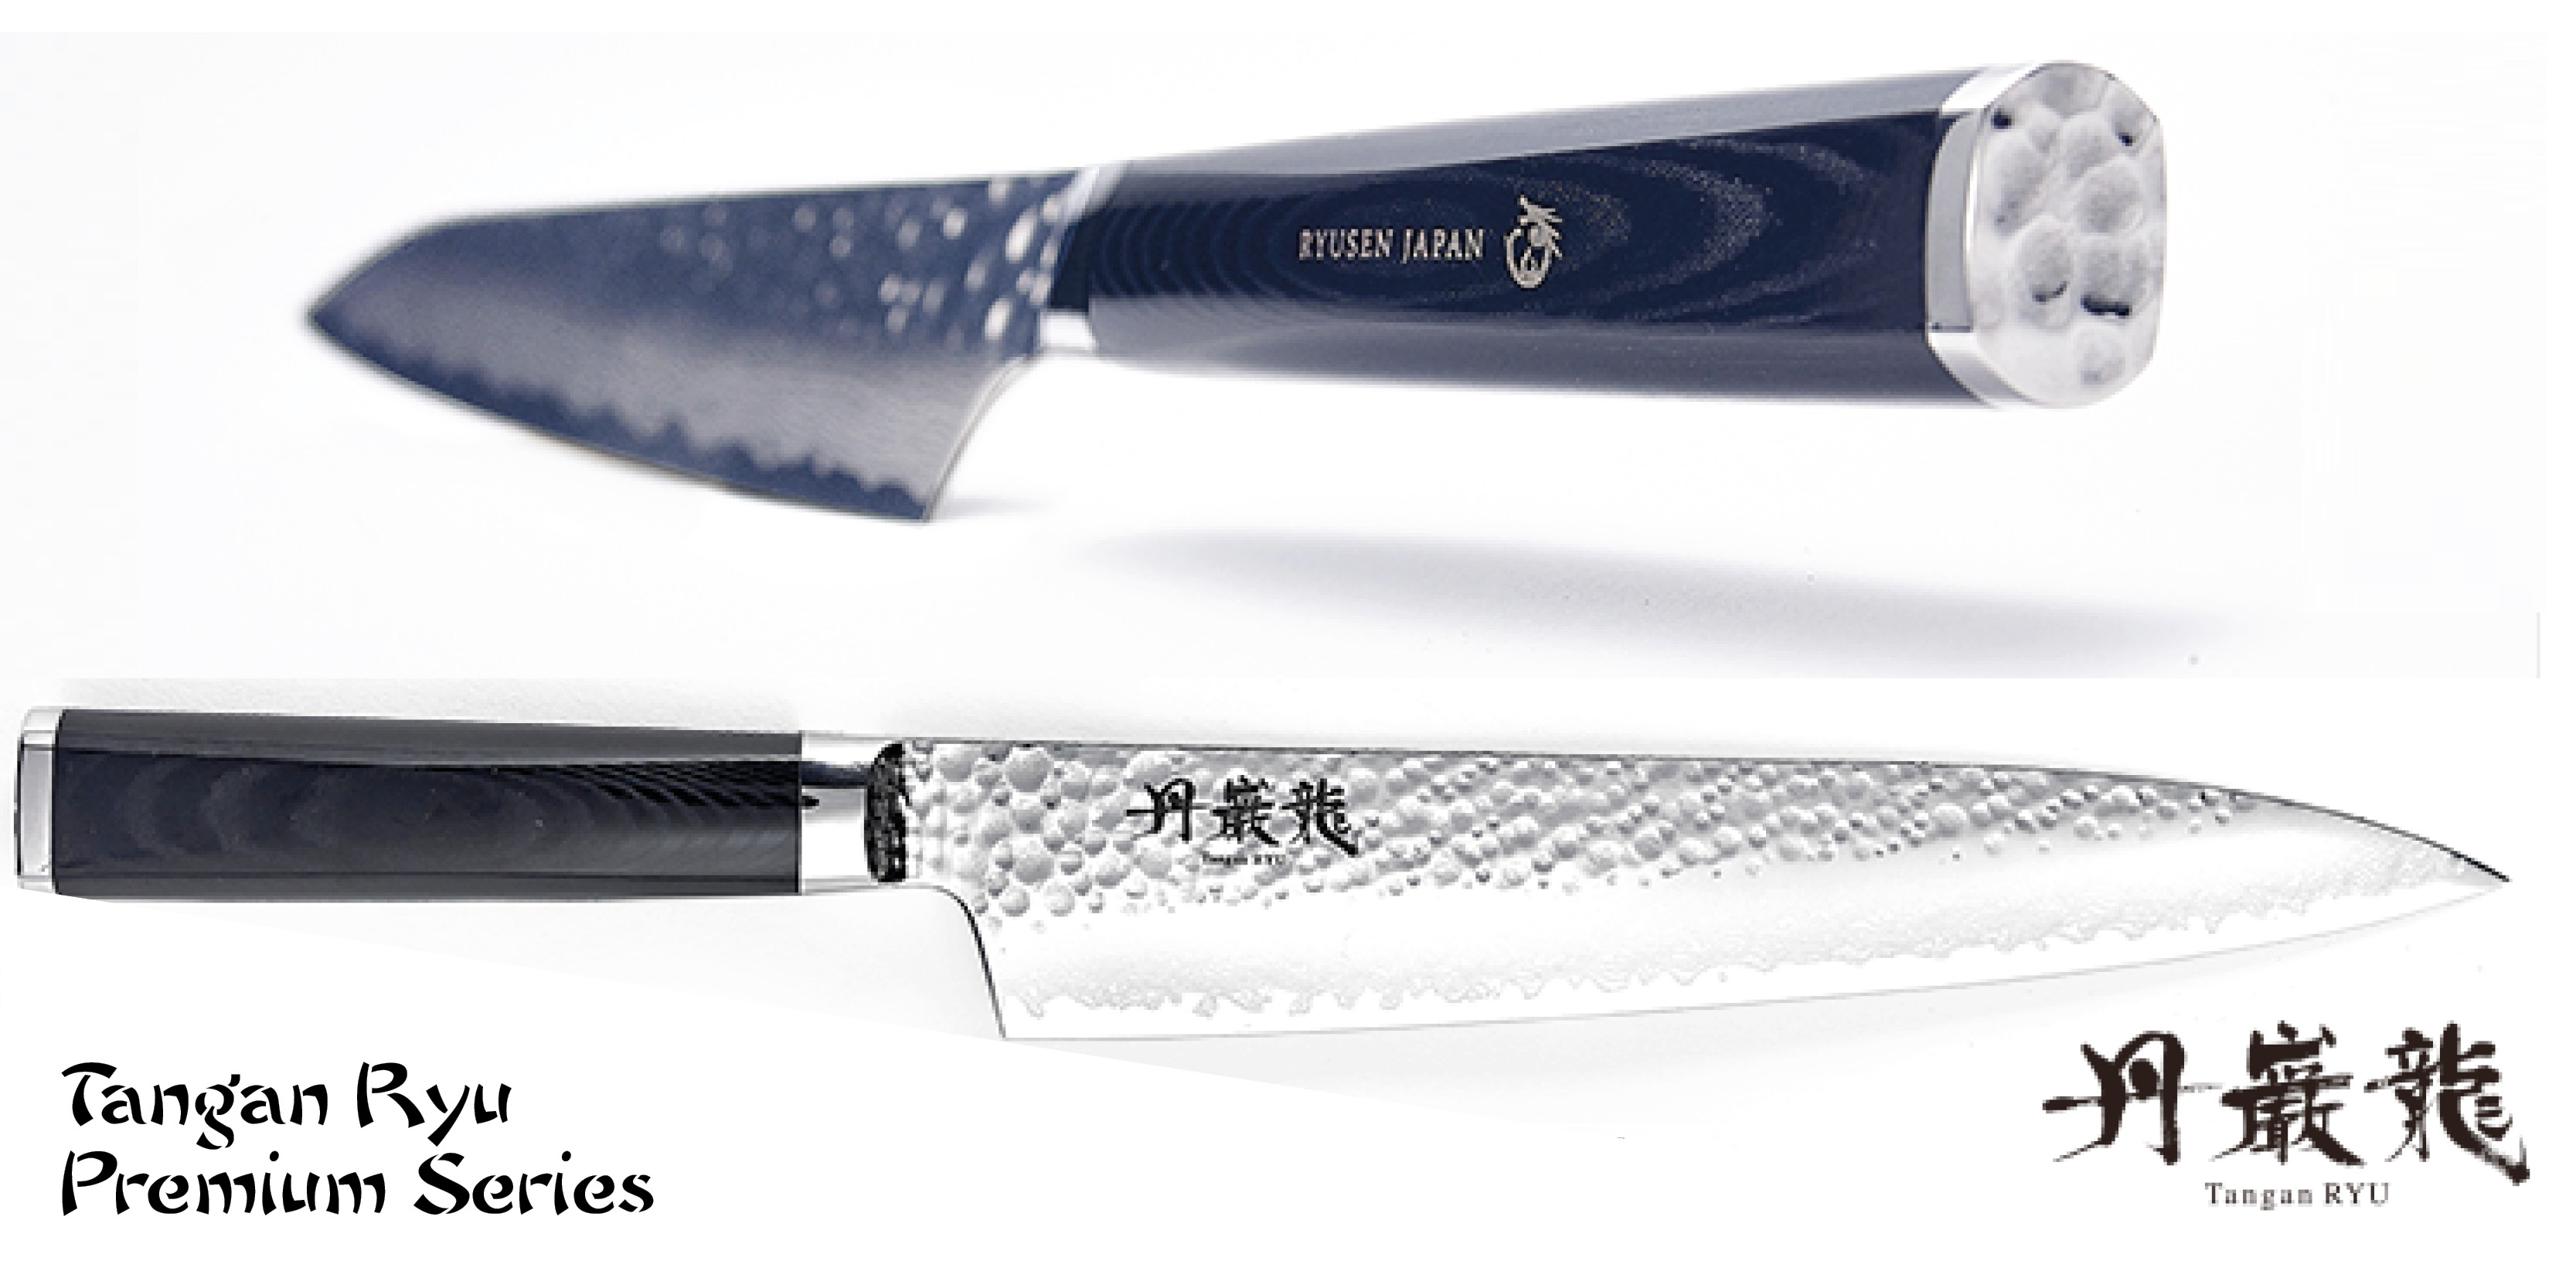 couteaux japonais ryusen tangan ryu